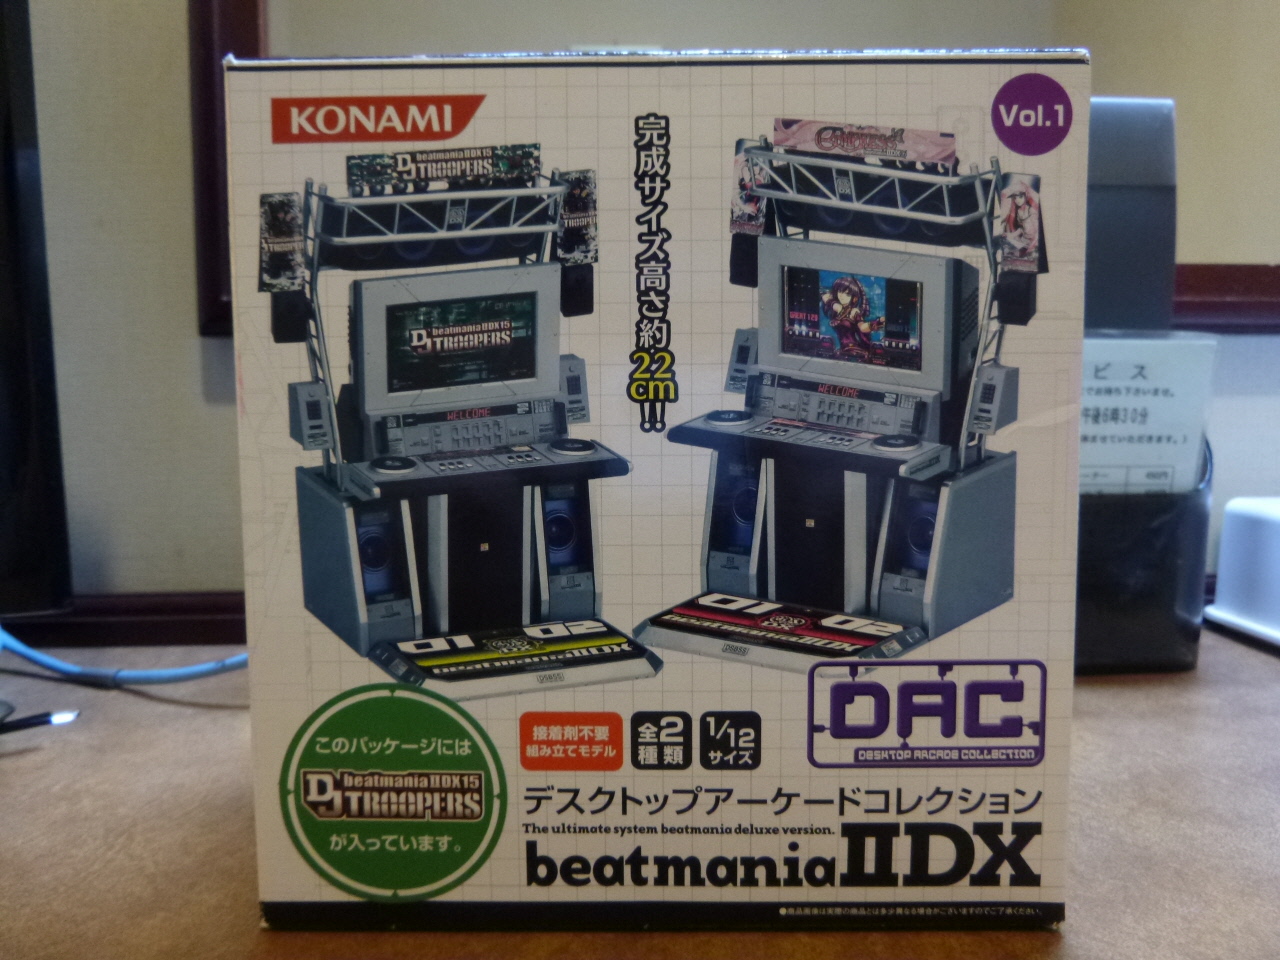 デスクトップアーケードコレクション beatmaniaⅡDX （DJTバージョン 